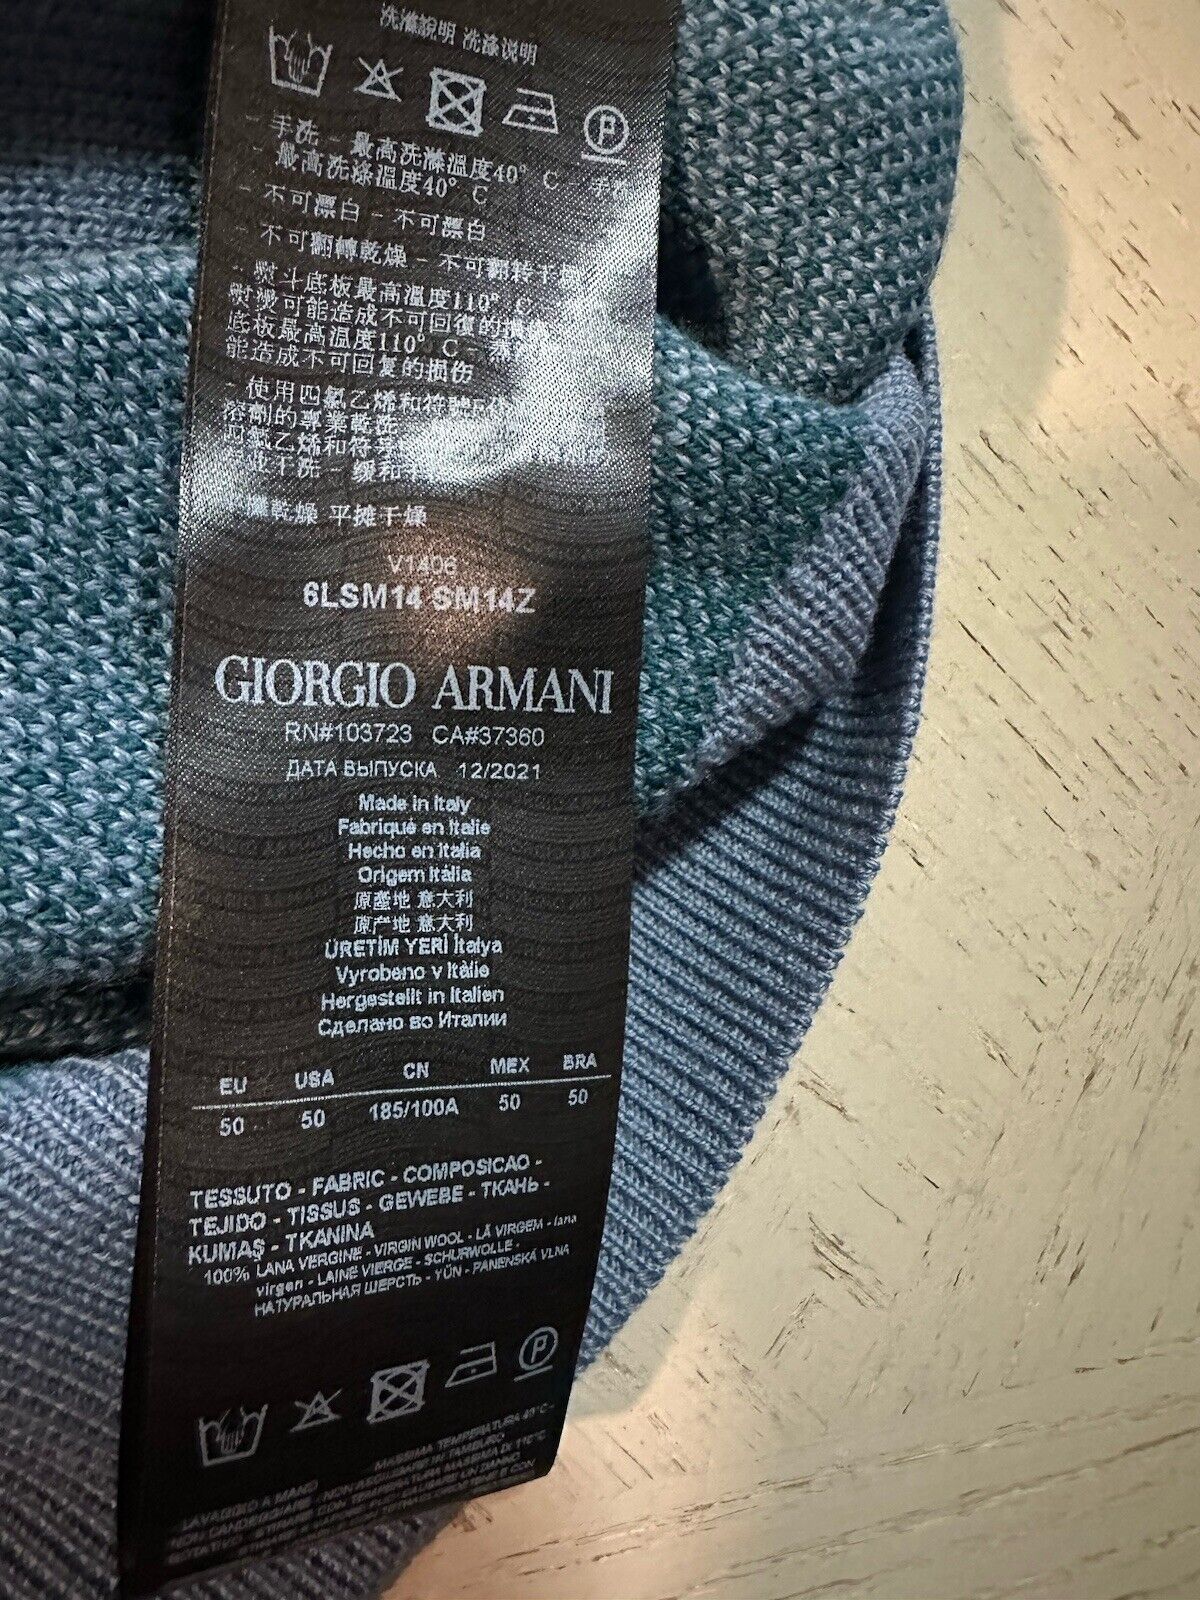 New $1295 Giorgio Armani Men’s Crewneck Sweater Blue/Green 50 US ( M ) Italy